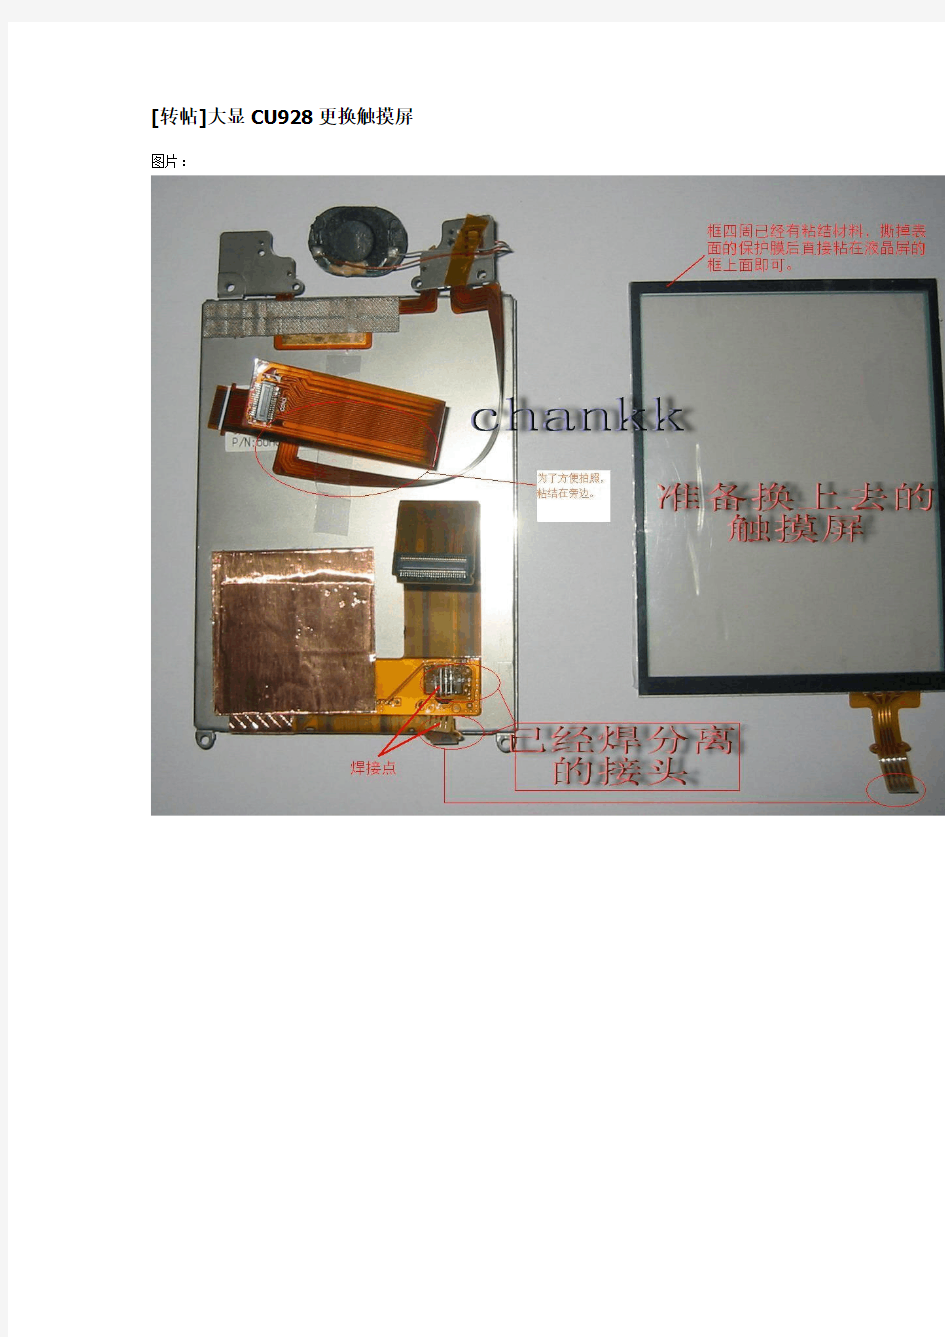 CU928 触摸屏的更换方法(DIY)。